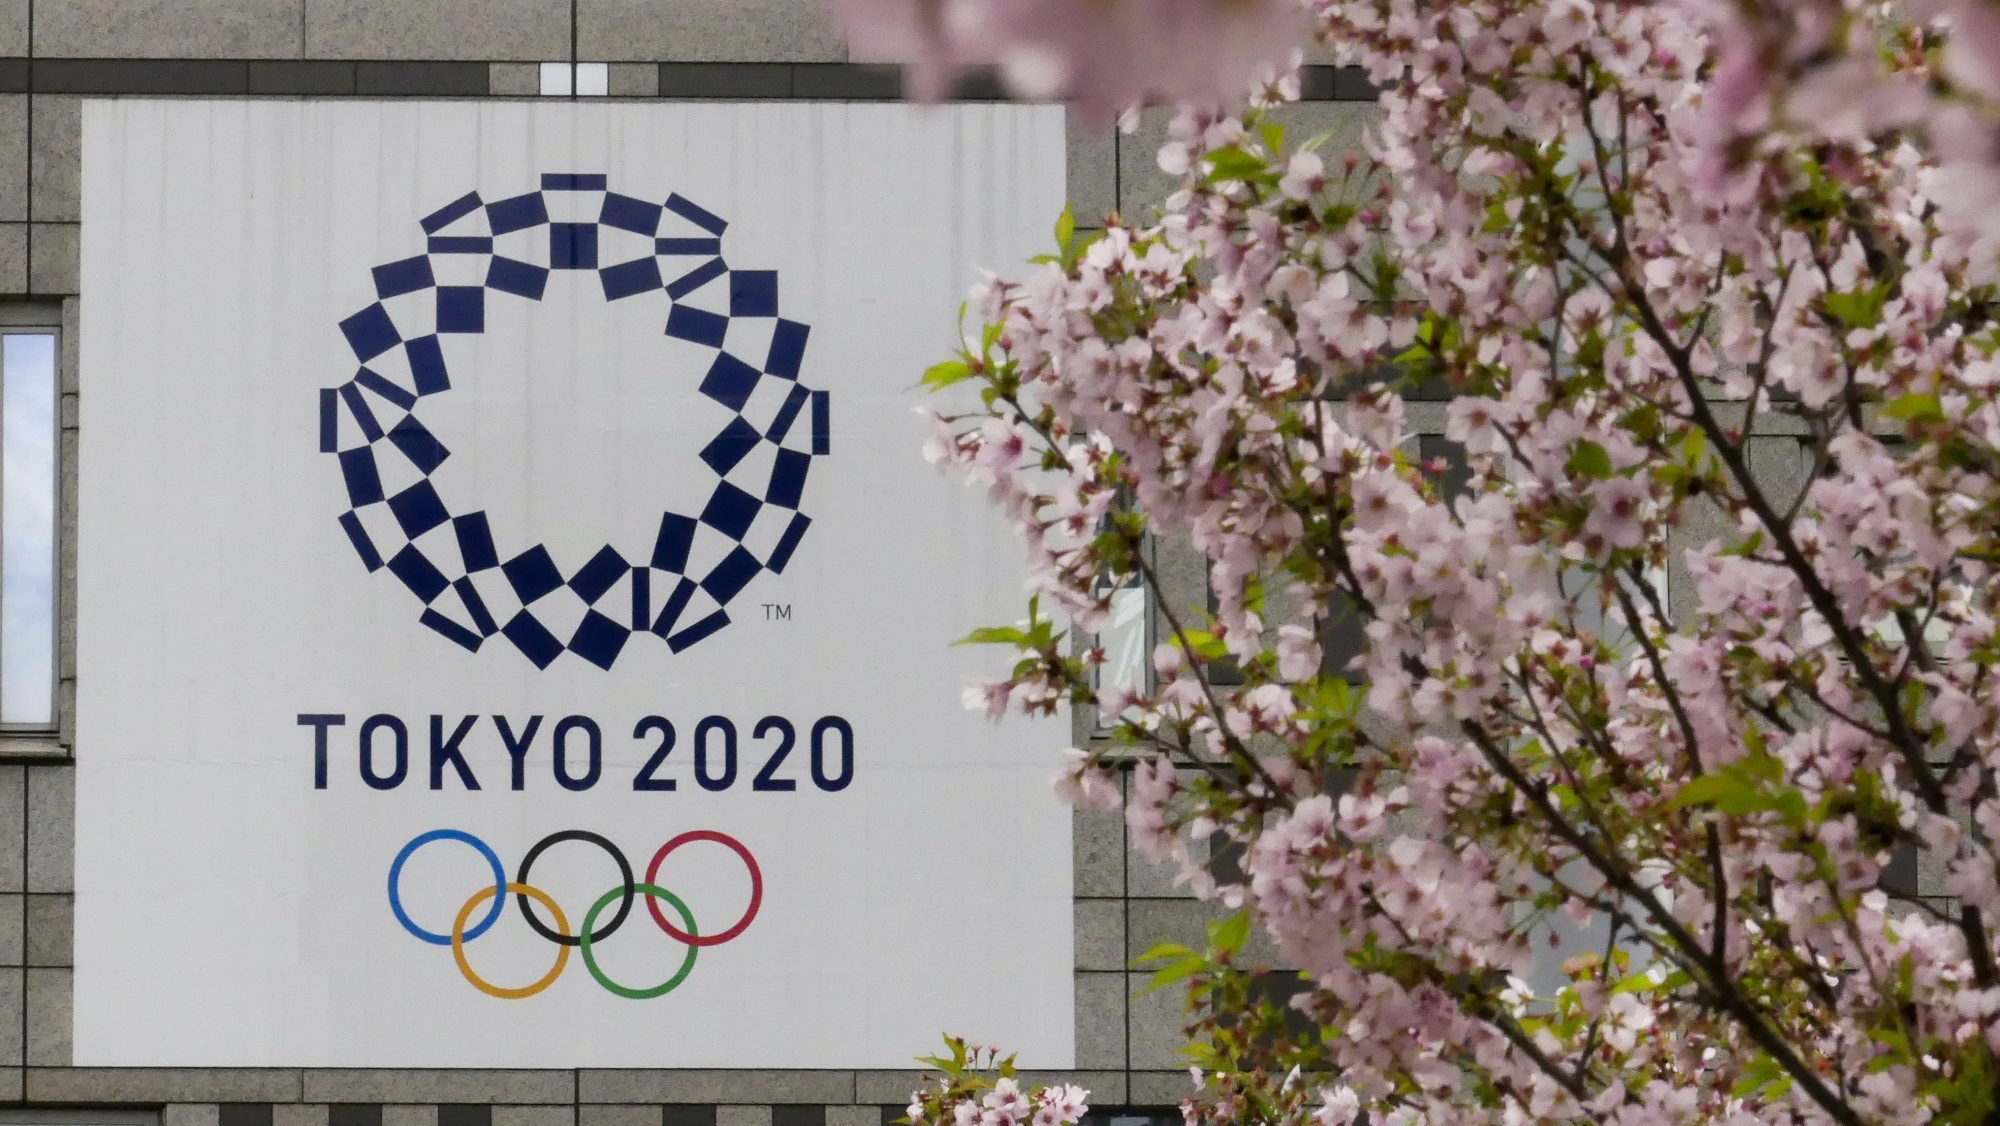 Os Jogos Olímpicos Tóquio2020 foram adiados para 23 de julho a 8 de agosto de 2021